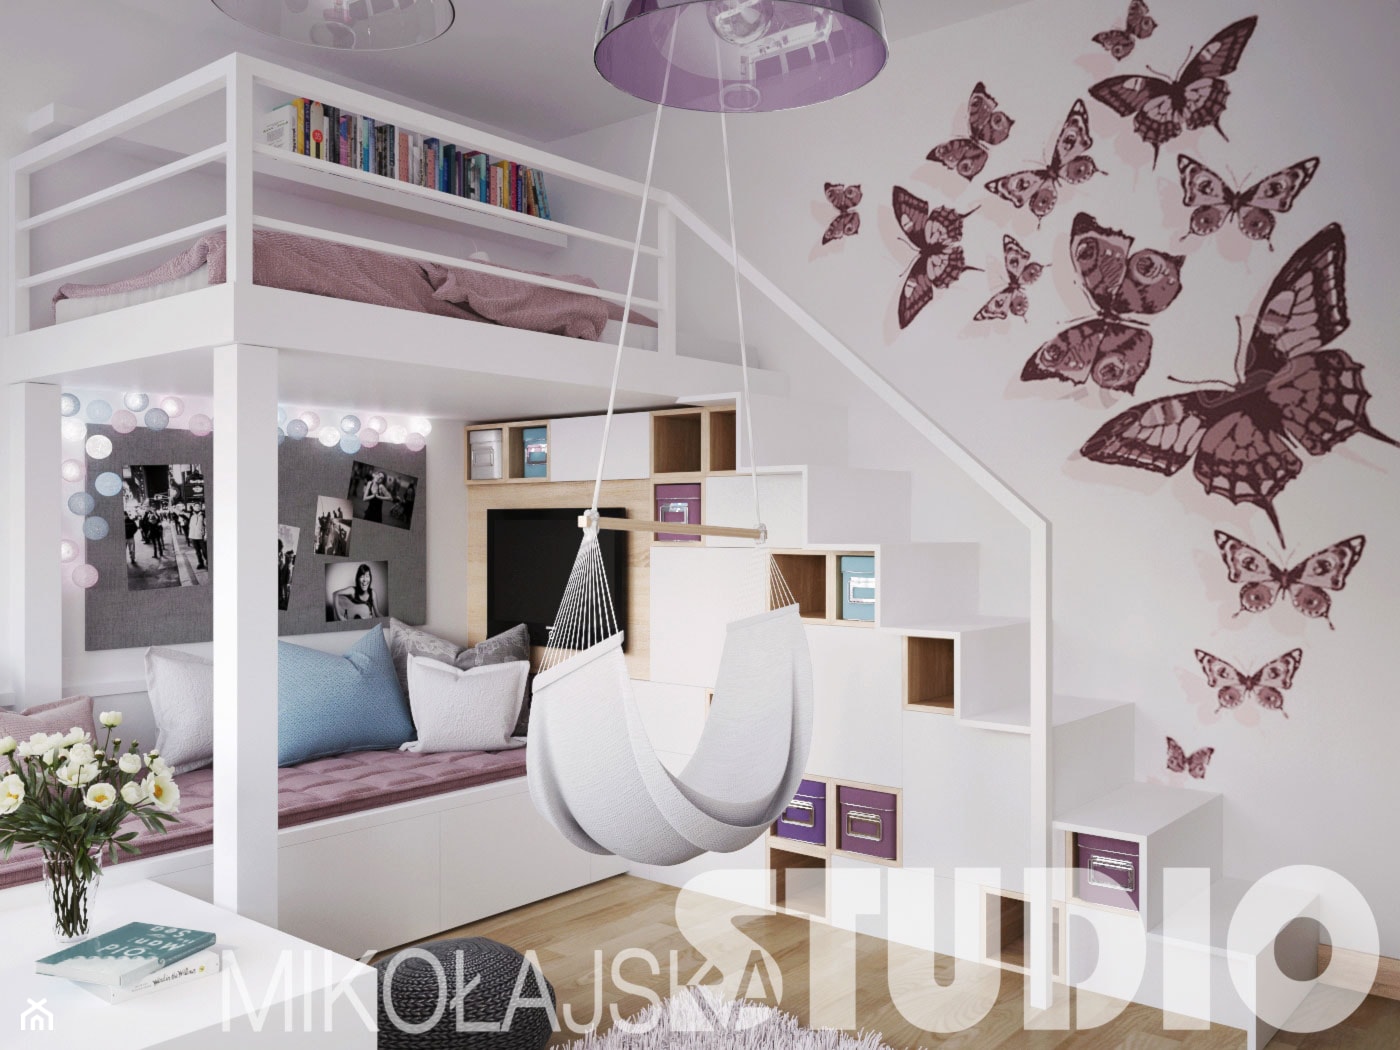 Pokój dla dziewczynki z antresolą - zdjęcie od MIKOŁAJSKAstudio - Homebook